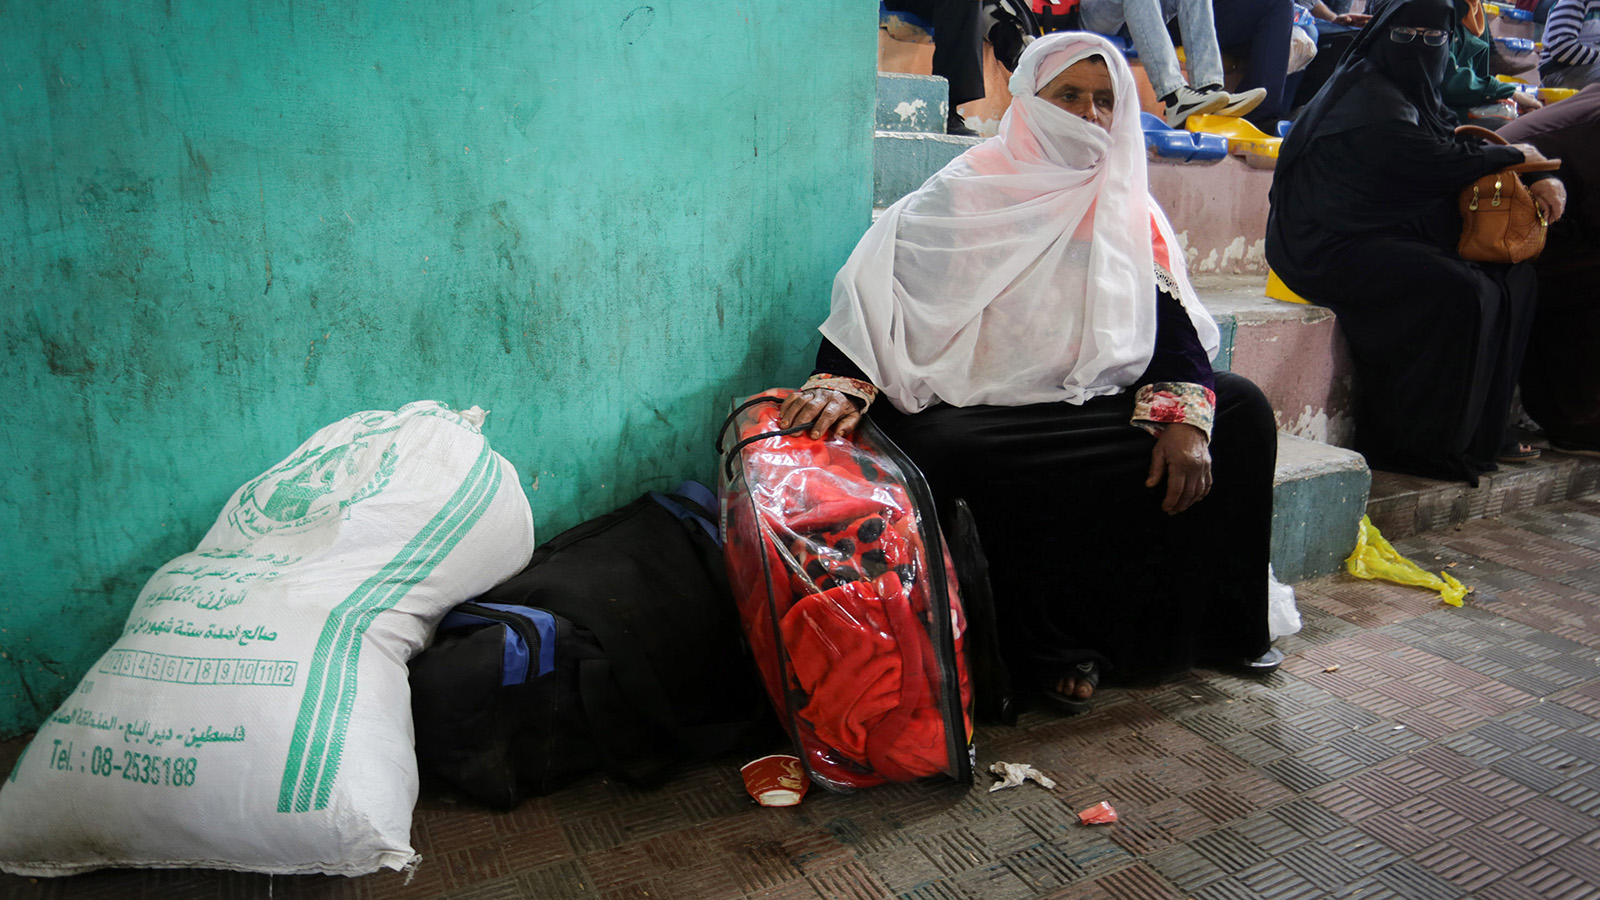 &quot;הנשים חשות נבגדות, כי האמהות שלהן לא מצליחות להגן עליהן מתקיפות מיניות&quot;. נשים פלסטיניות ממתינות לחצות את הגבול למצרים, עם פתיחתו של מעבר רפיח לשלושה ימים, 28 באפריל, 2018 (Abed Rahim Khatib/ Flash90)